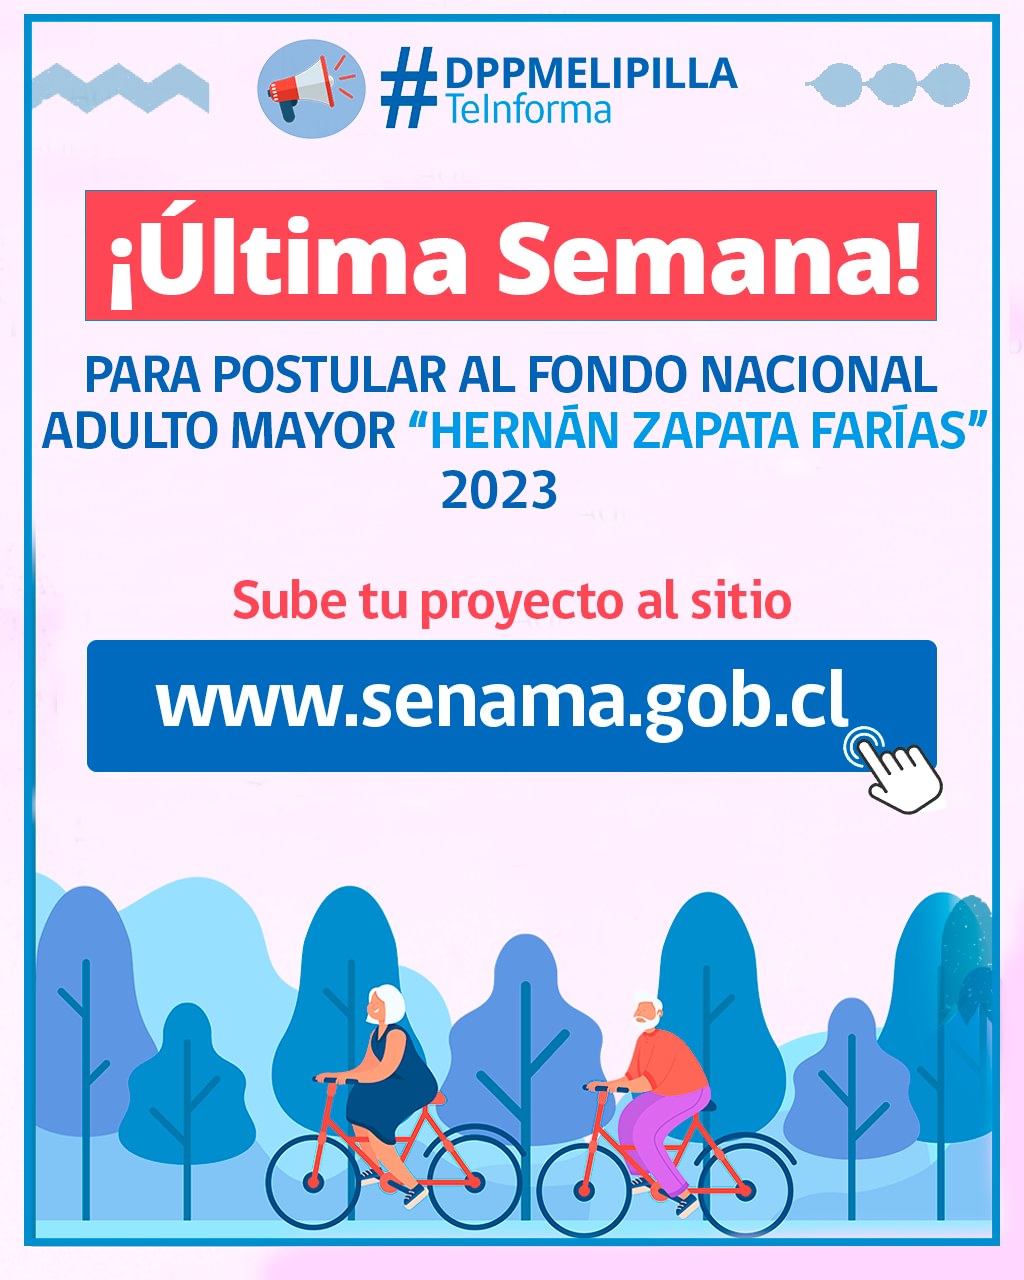 Hasta el viernes 12 de mayo hay plazo para postular al Fondo Nacional de SENAMA “Hernán Zapata Farías 2023”